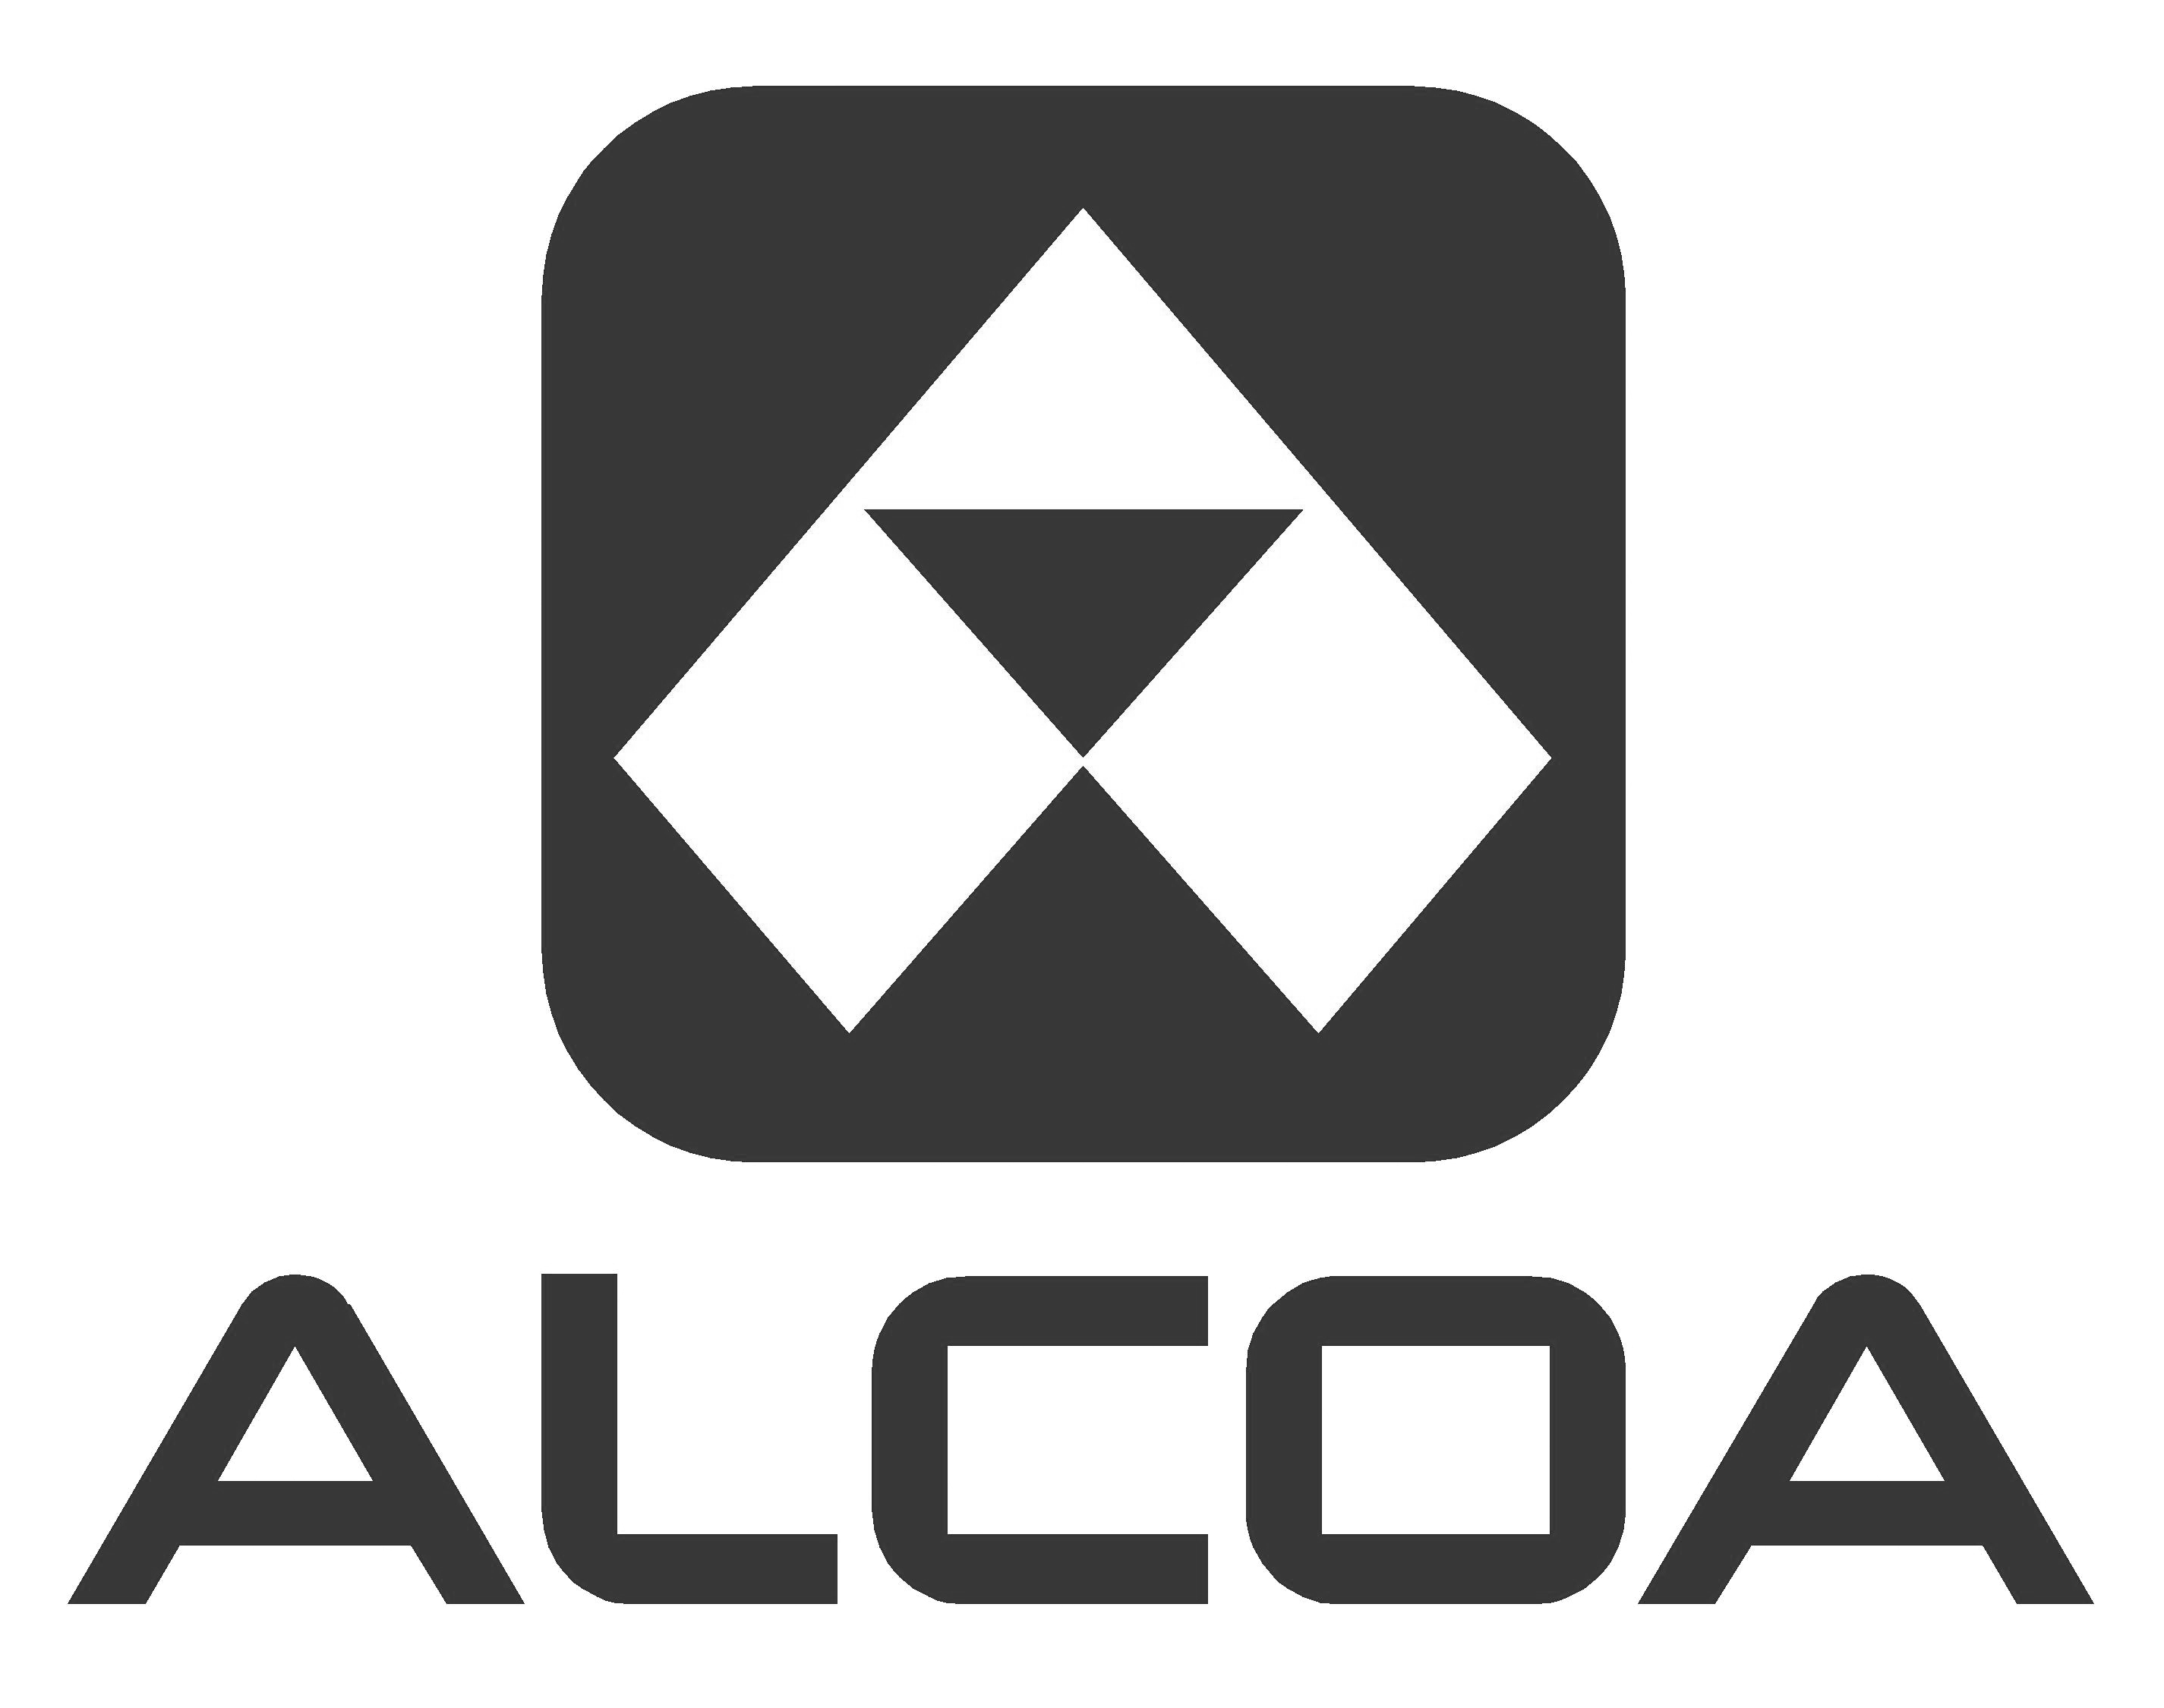 woims zruckracesport alcoa logo